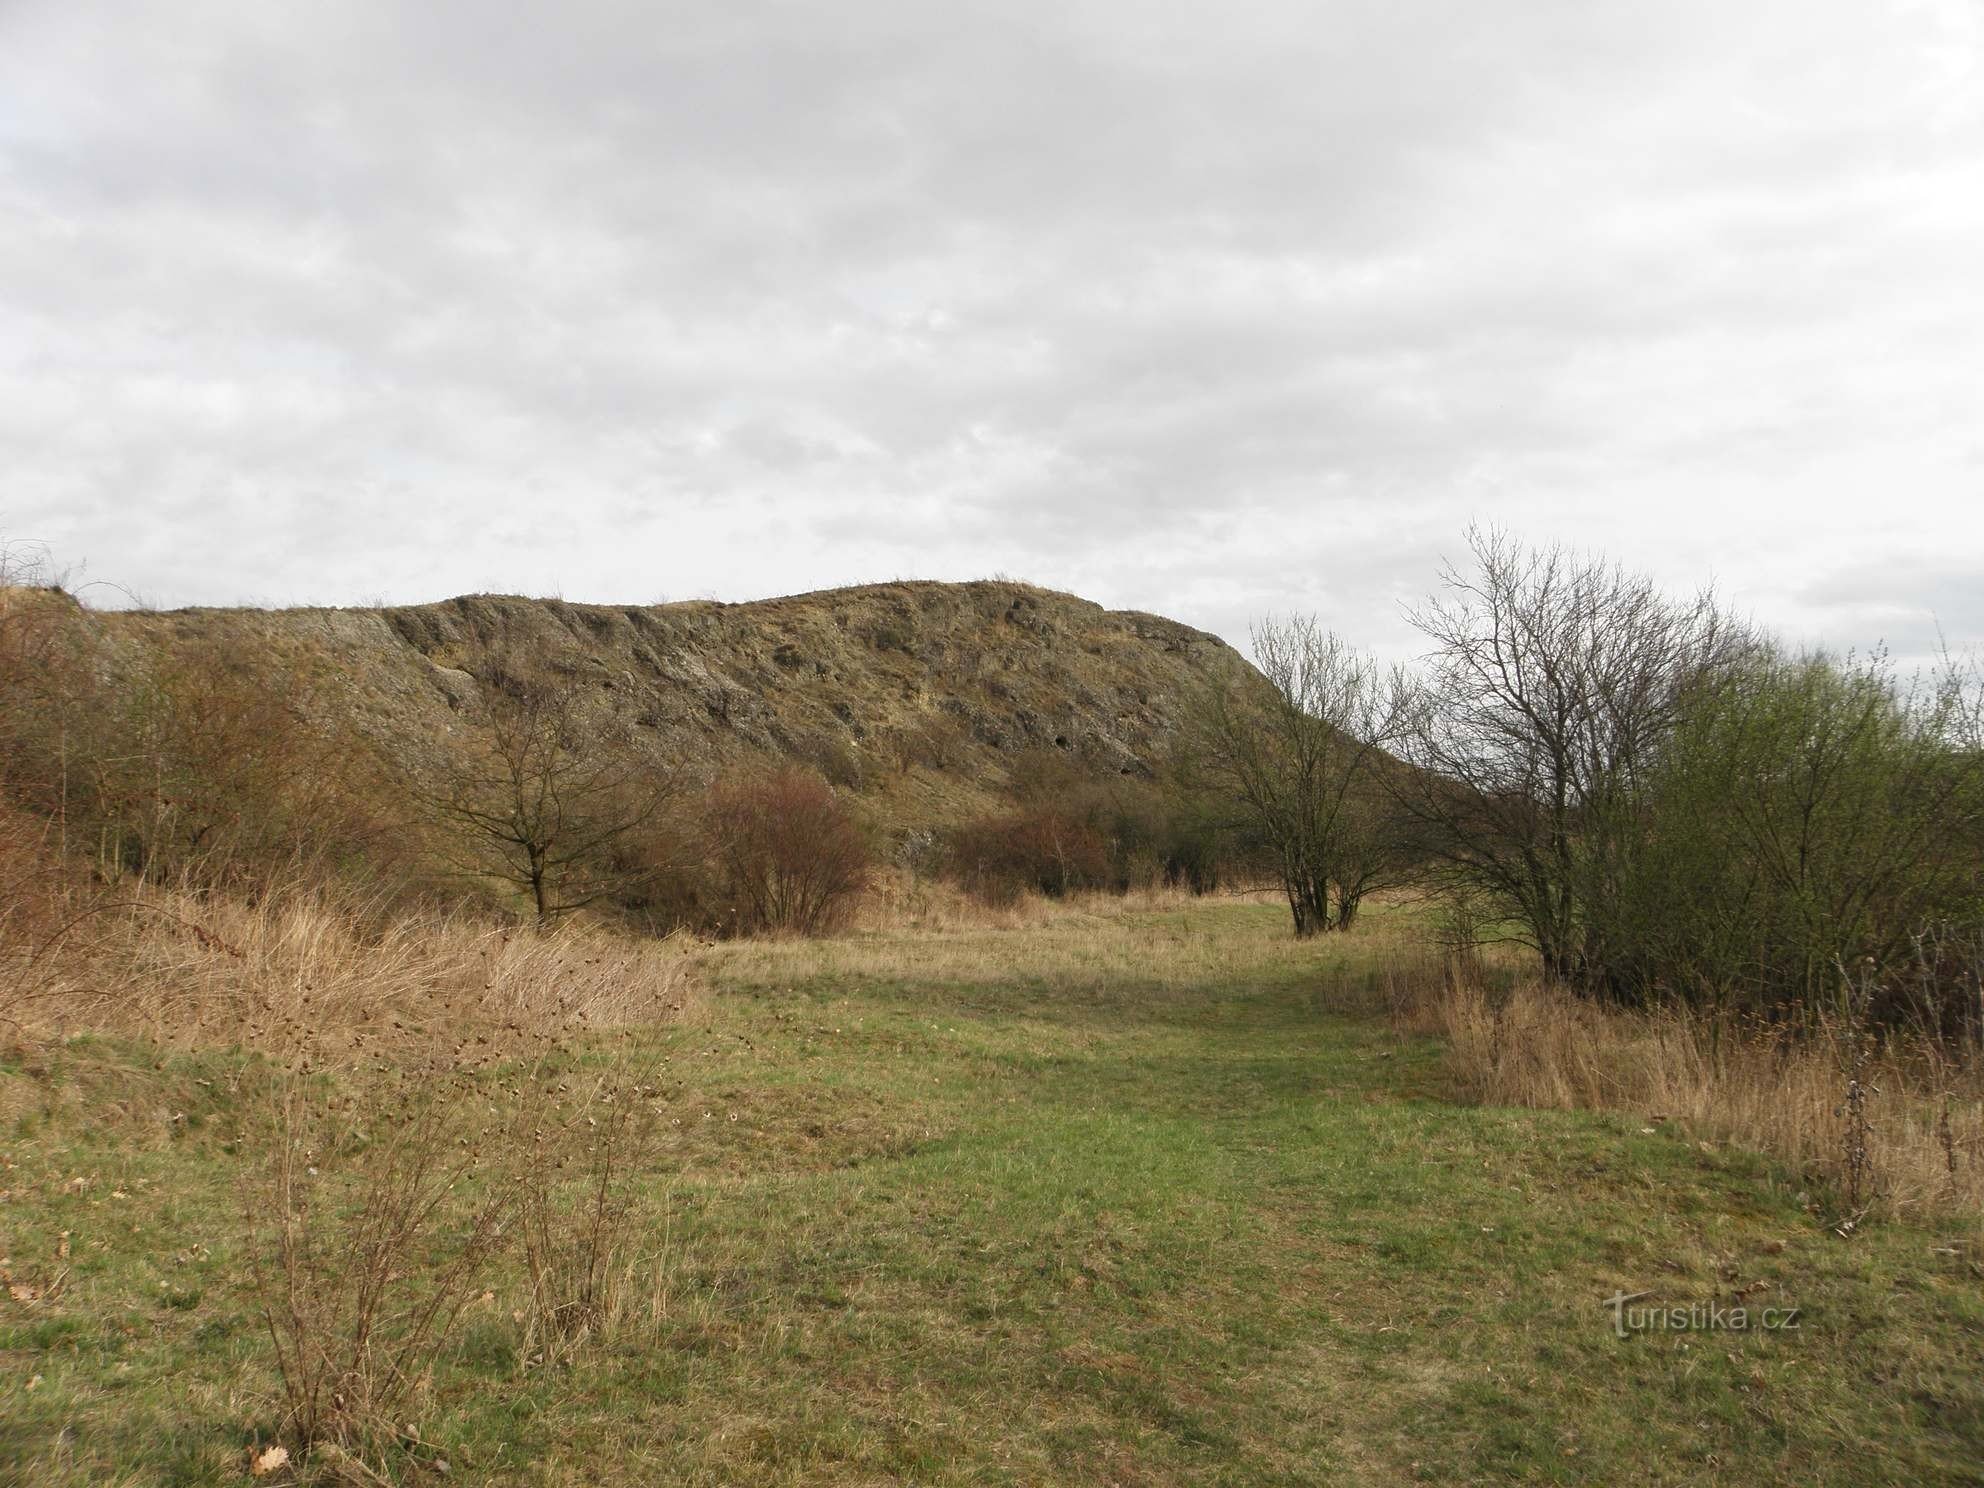 Đài tưởng niệm tự nhiên Horka - một nền tảng đã được khai quật trước đây trên ngọn đồi chính - 2.4.2012 tháng XNUMX năm XNUMX